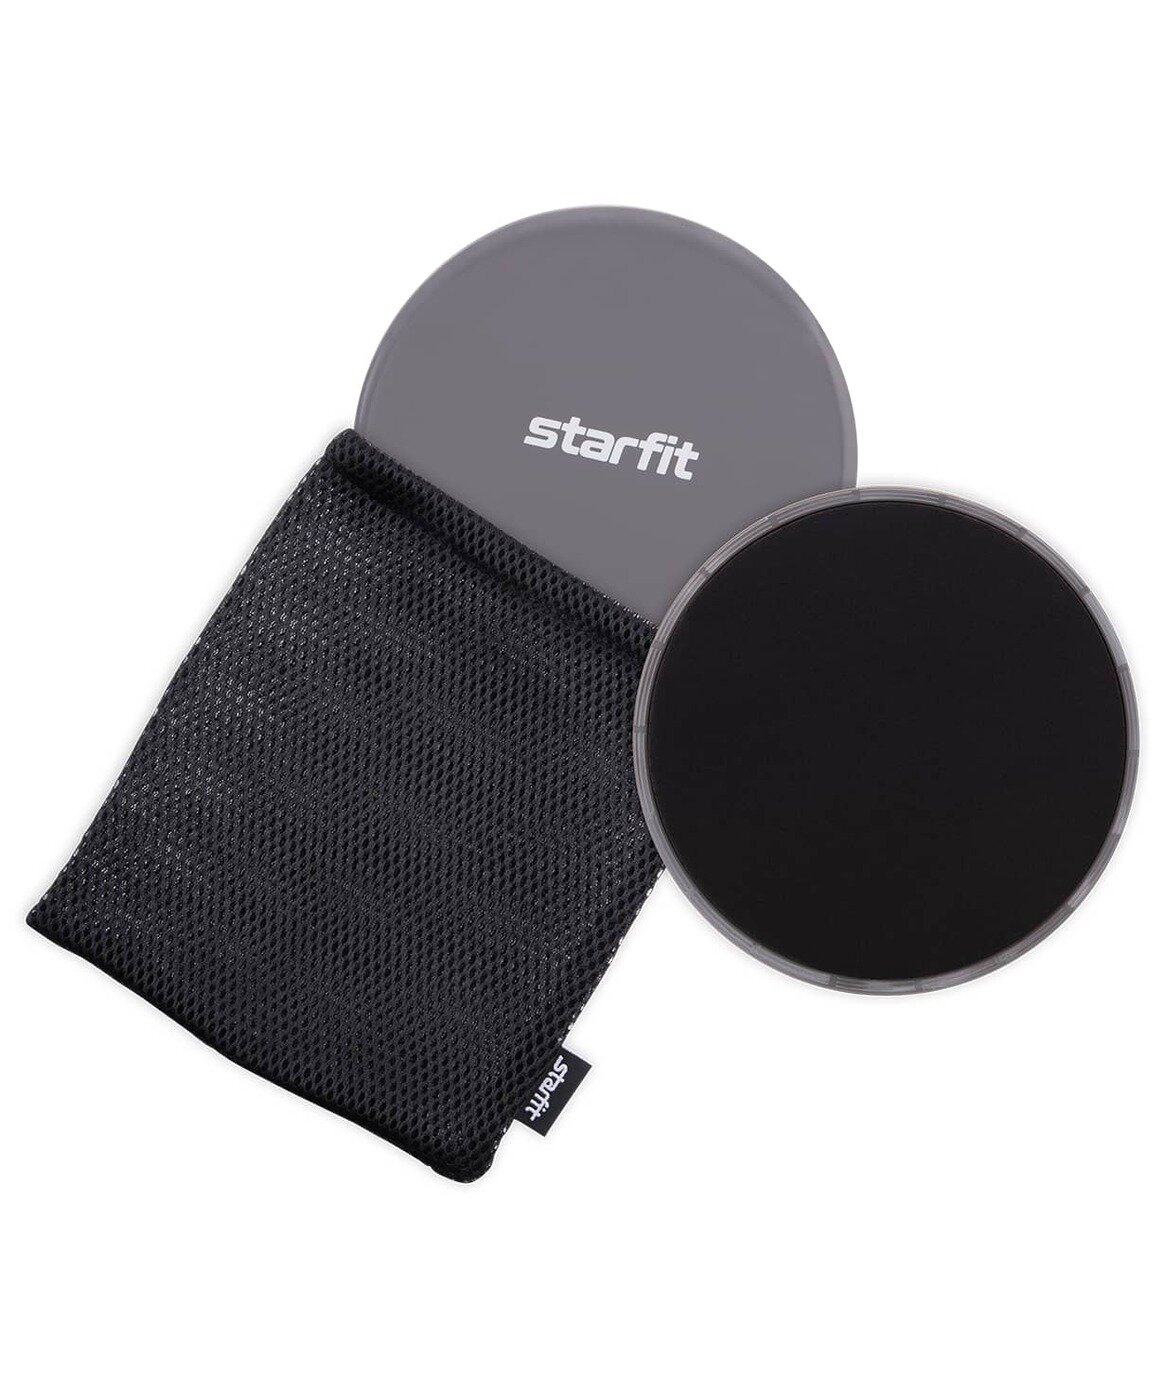 Слайдеры для фитнеса STARFIT FS-101, серый/черный, 2шт.